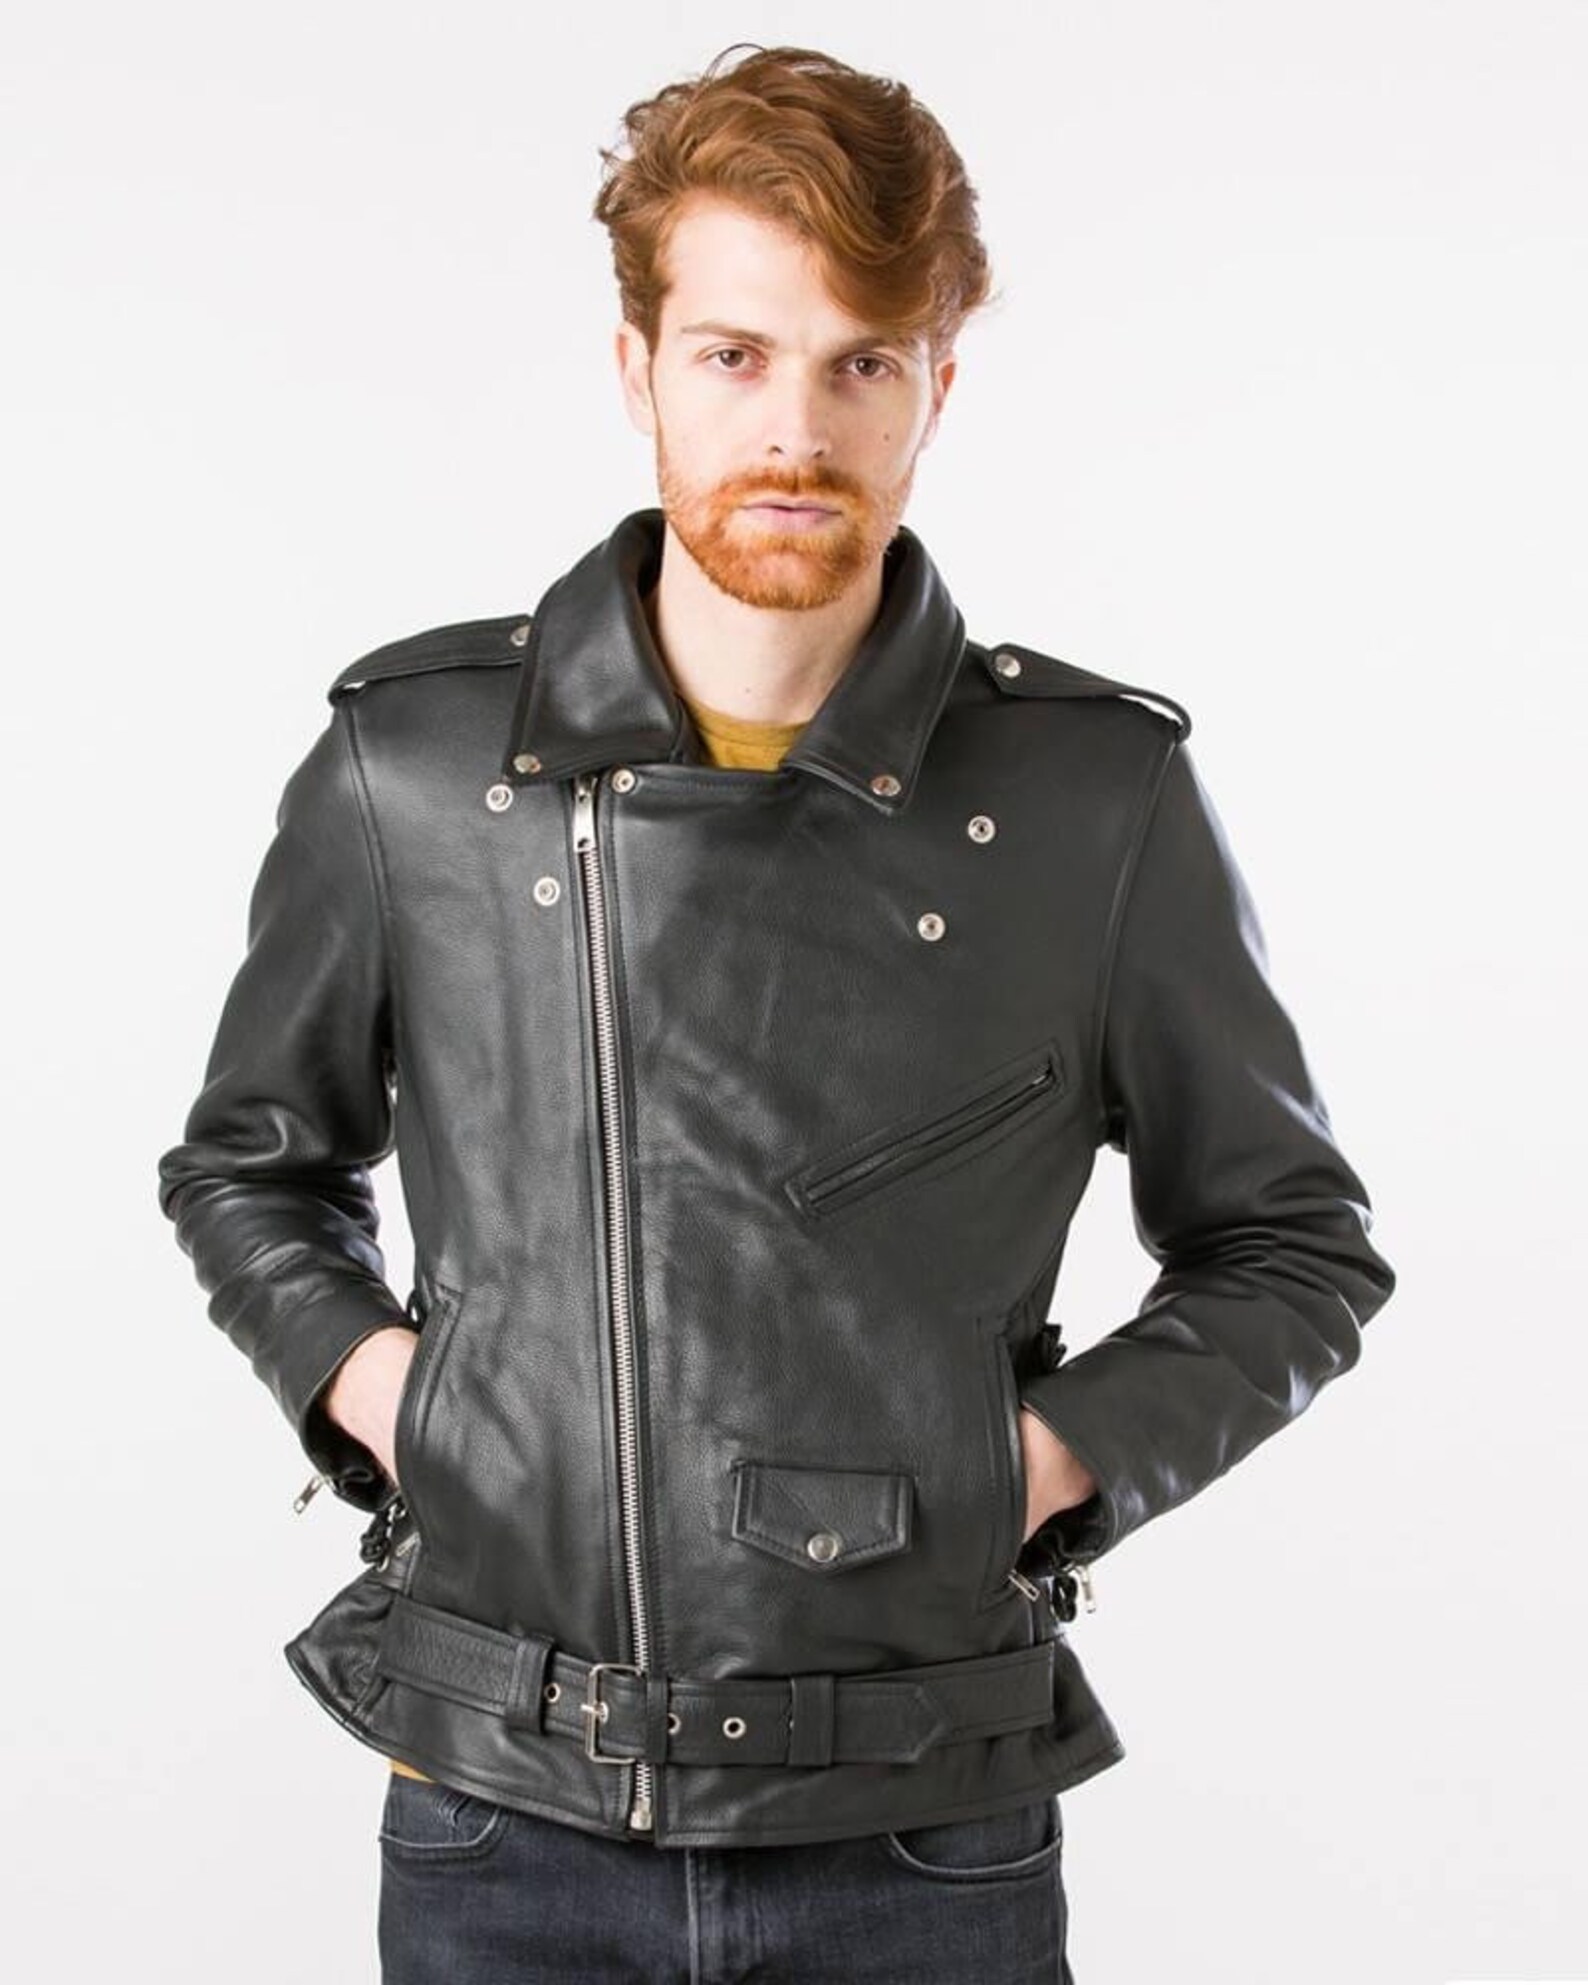 Leather jacket Americano biker style leather jacket | Etsy